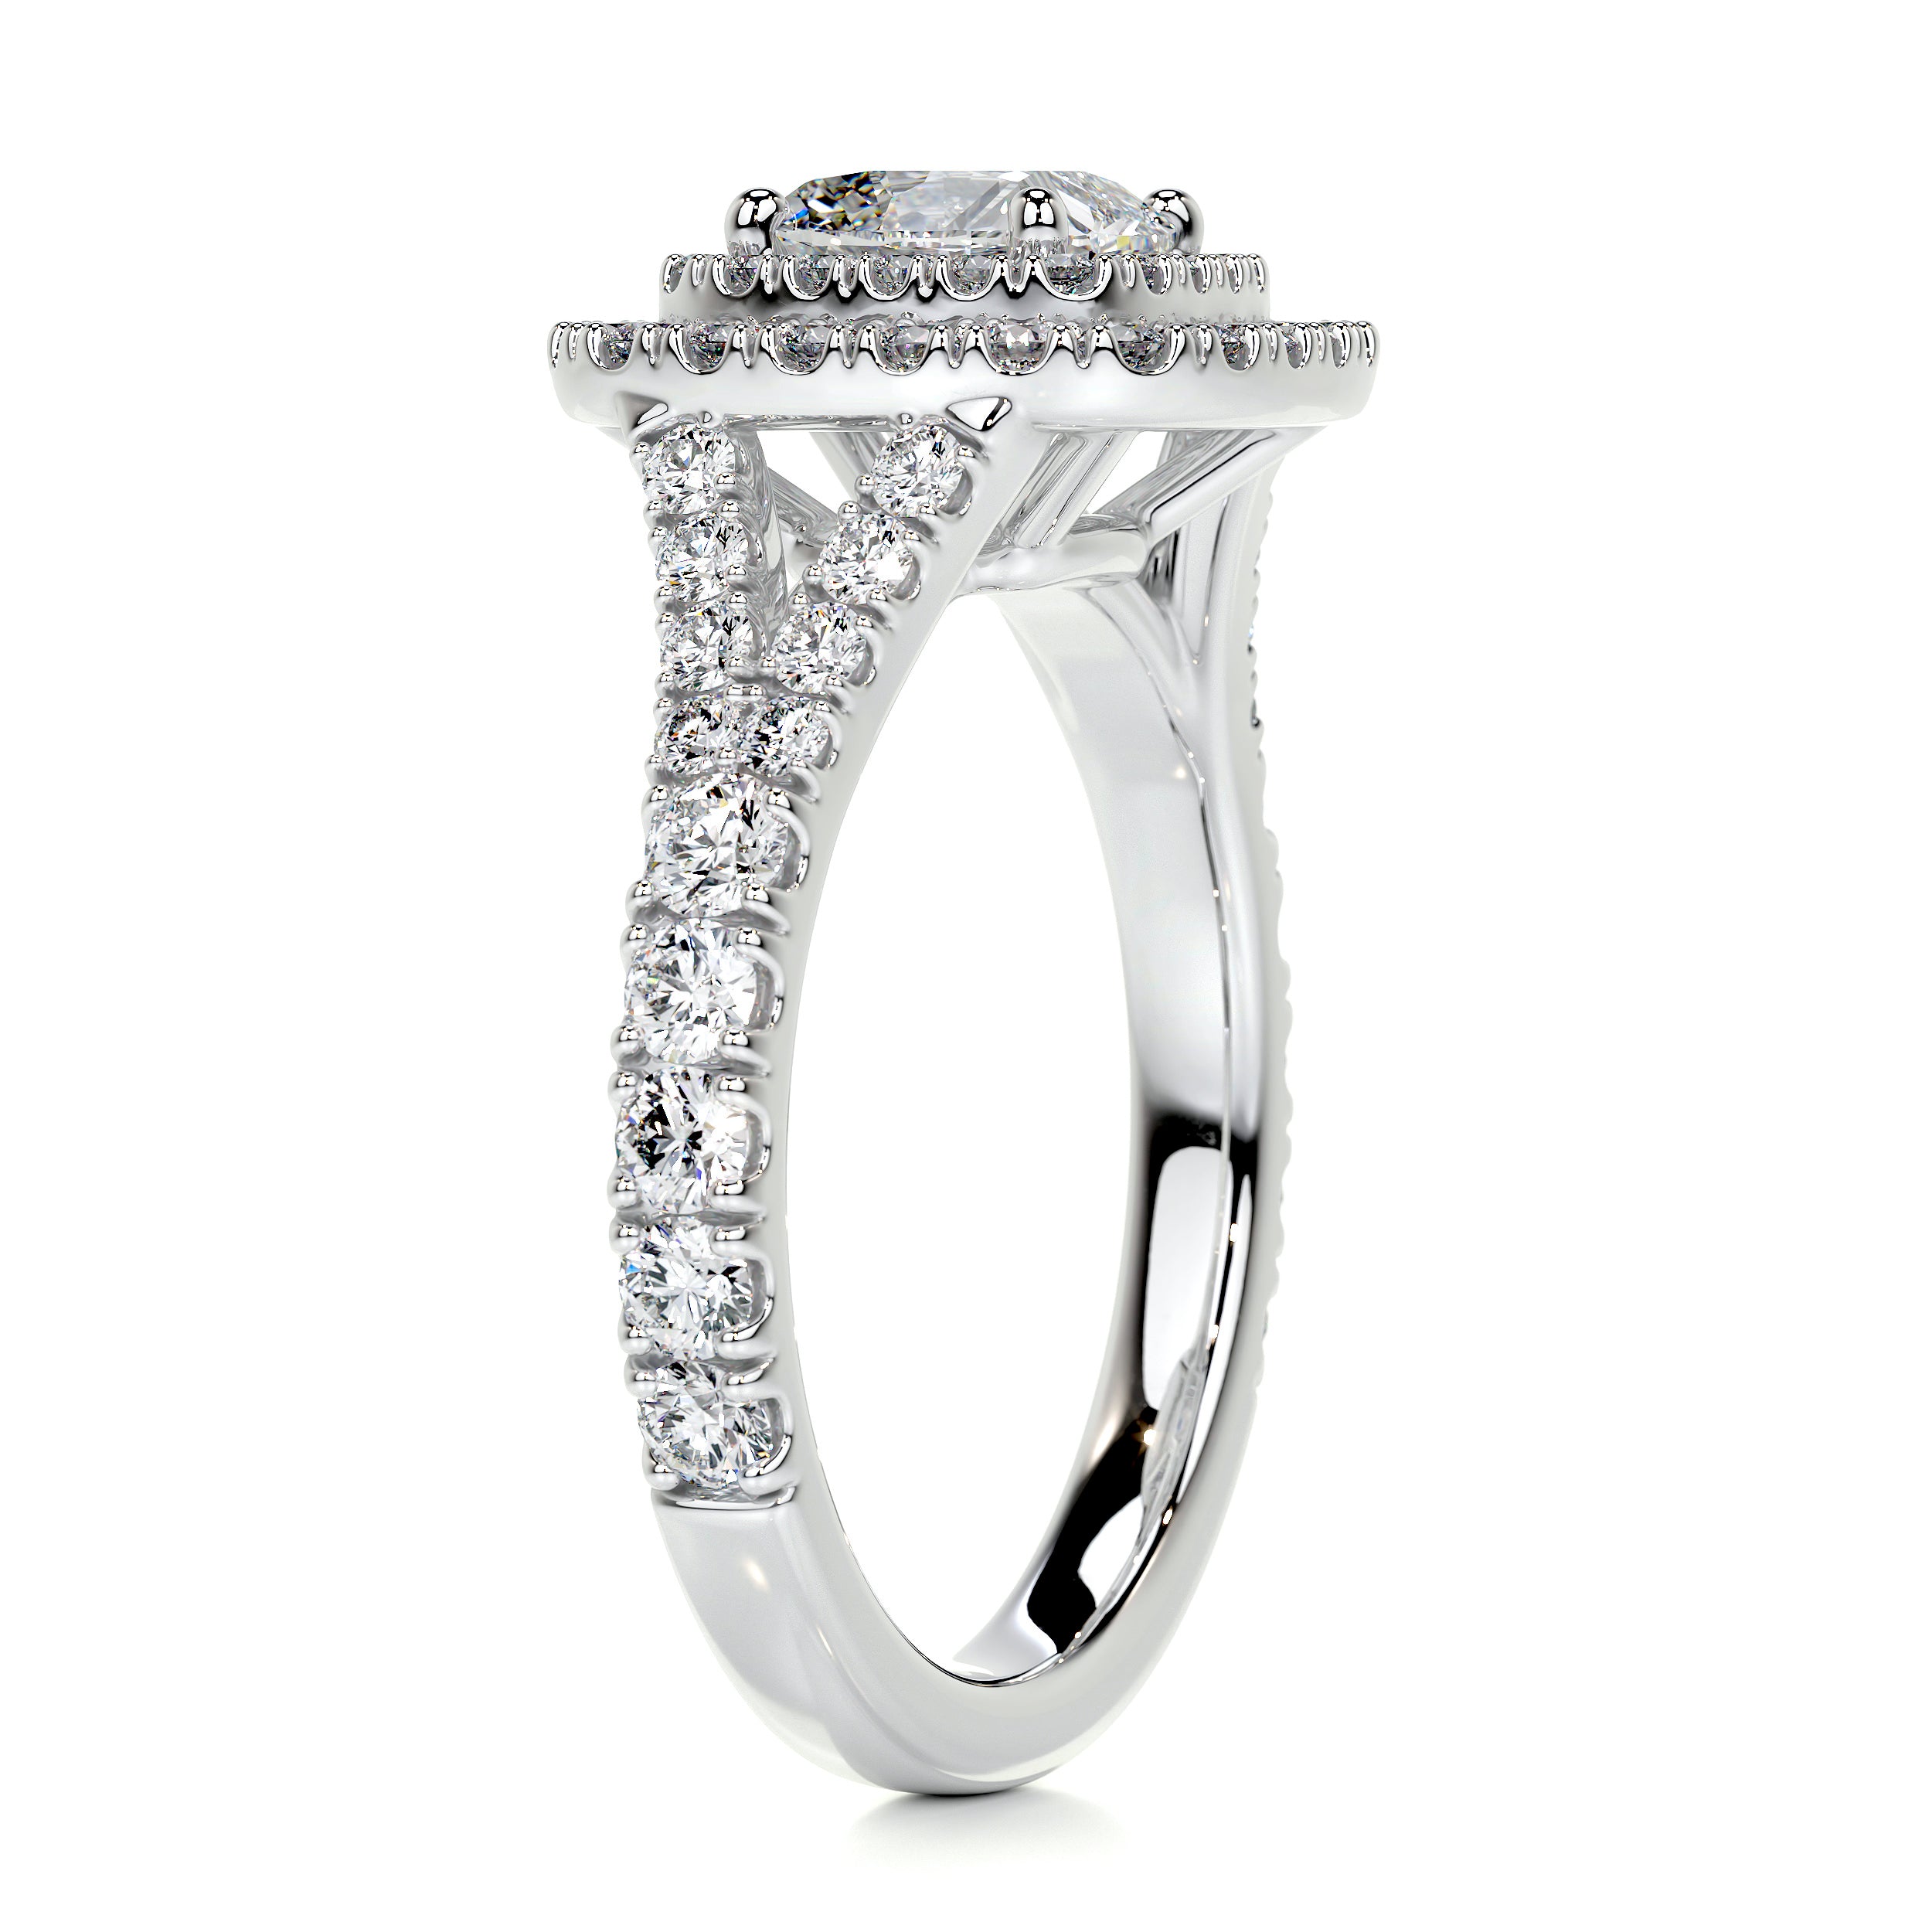 Tina Diamond Engagement Ring   (1.90 Carat) -18K White Gold